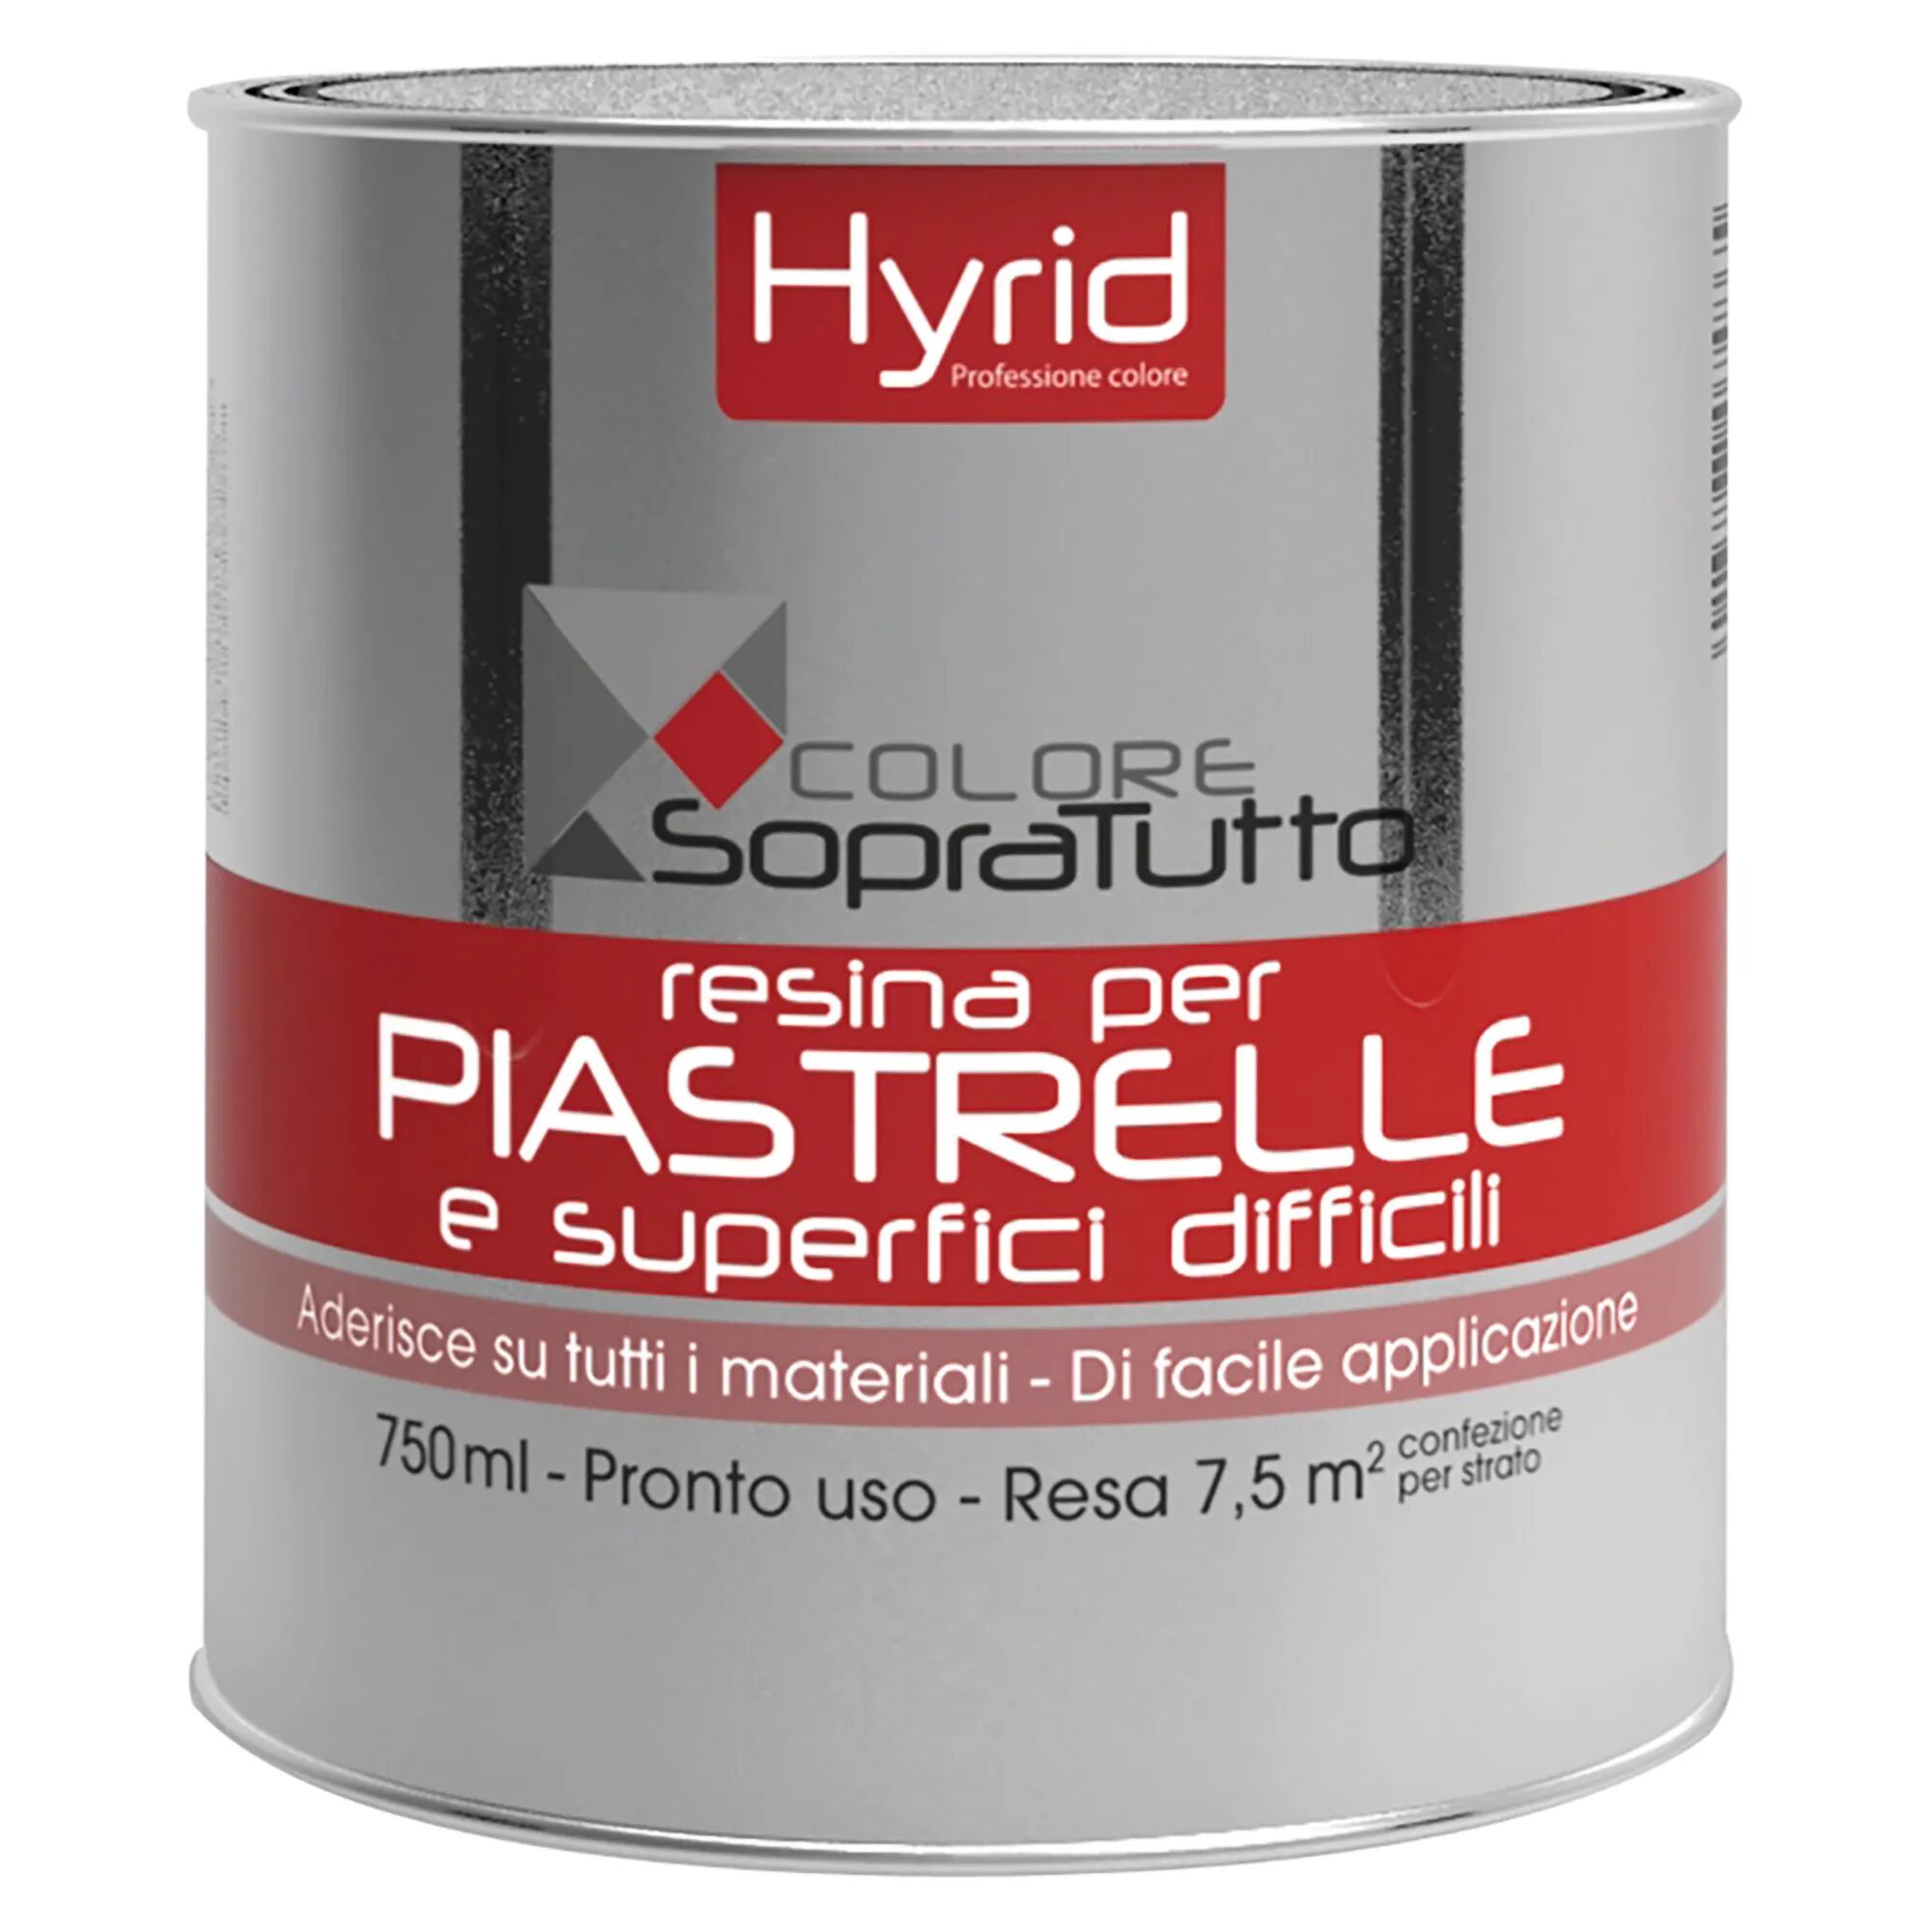 Hyrid By Covema RESINA PIASTRELLE HYRID GIADA 750 ml PER SUPERFICI DIFFICILI 10 m² CON 1 l PRONTO USO